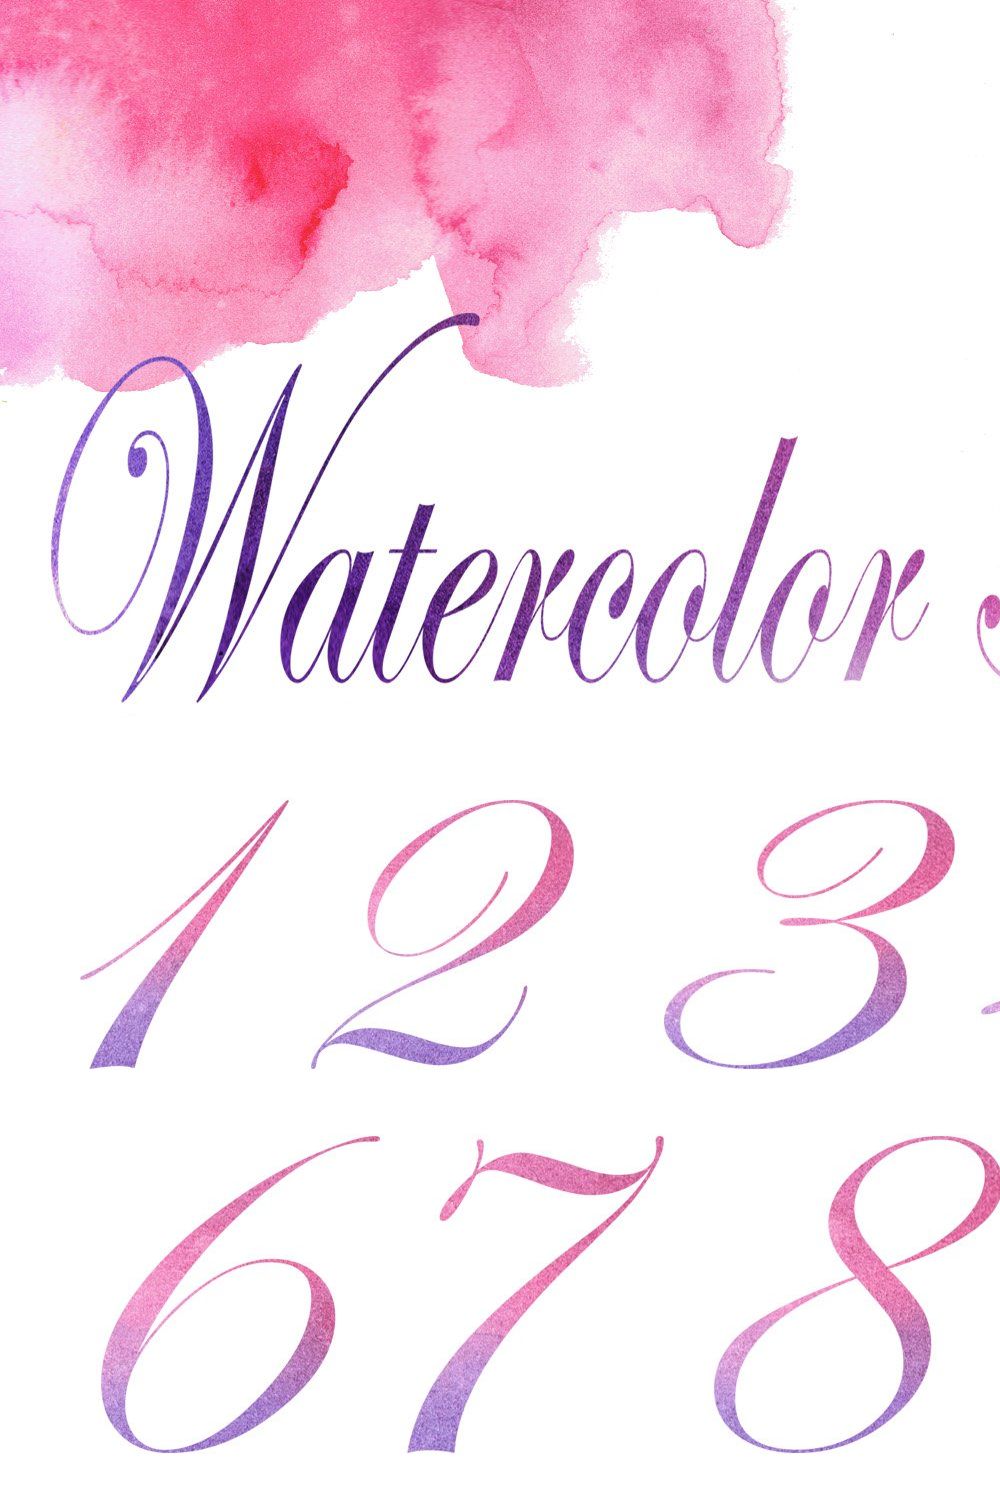 Watercolor alphabet pinterest preview image.